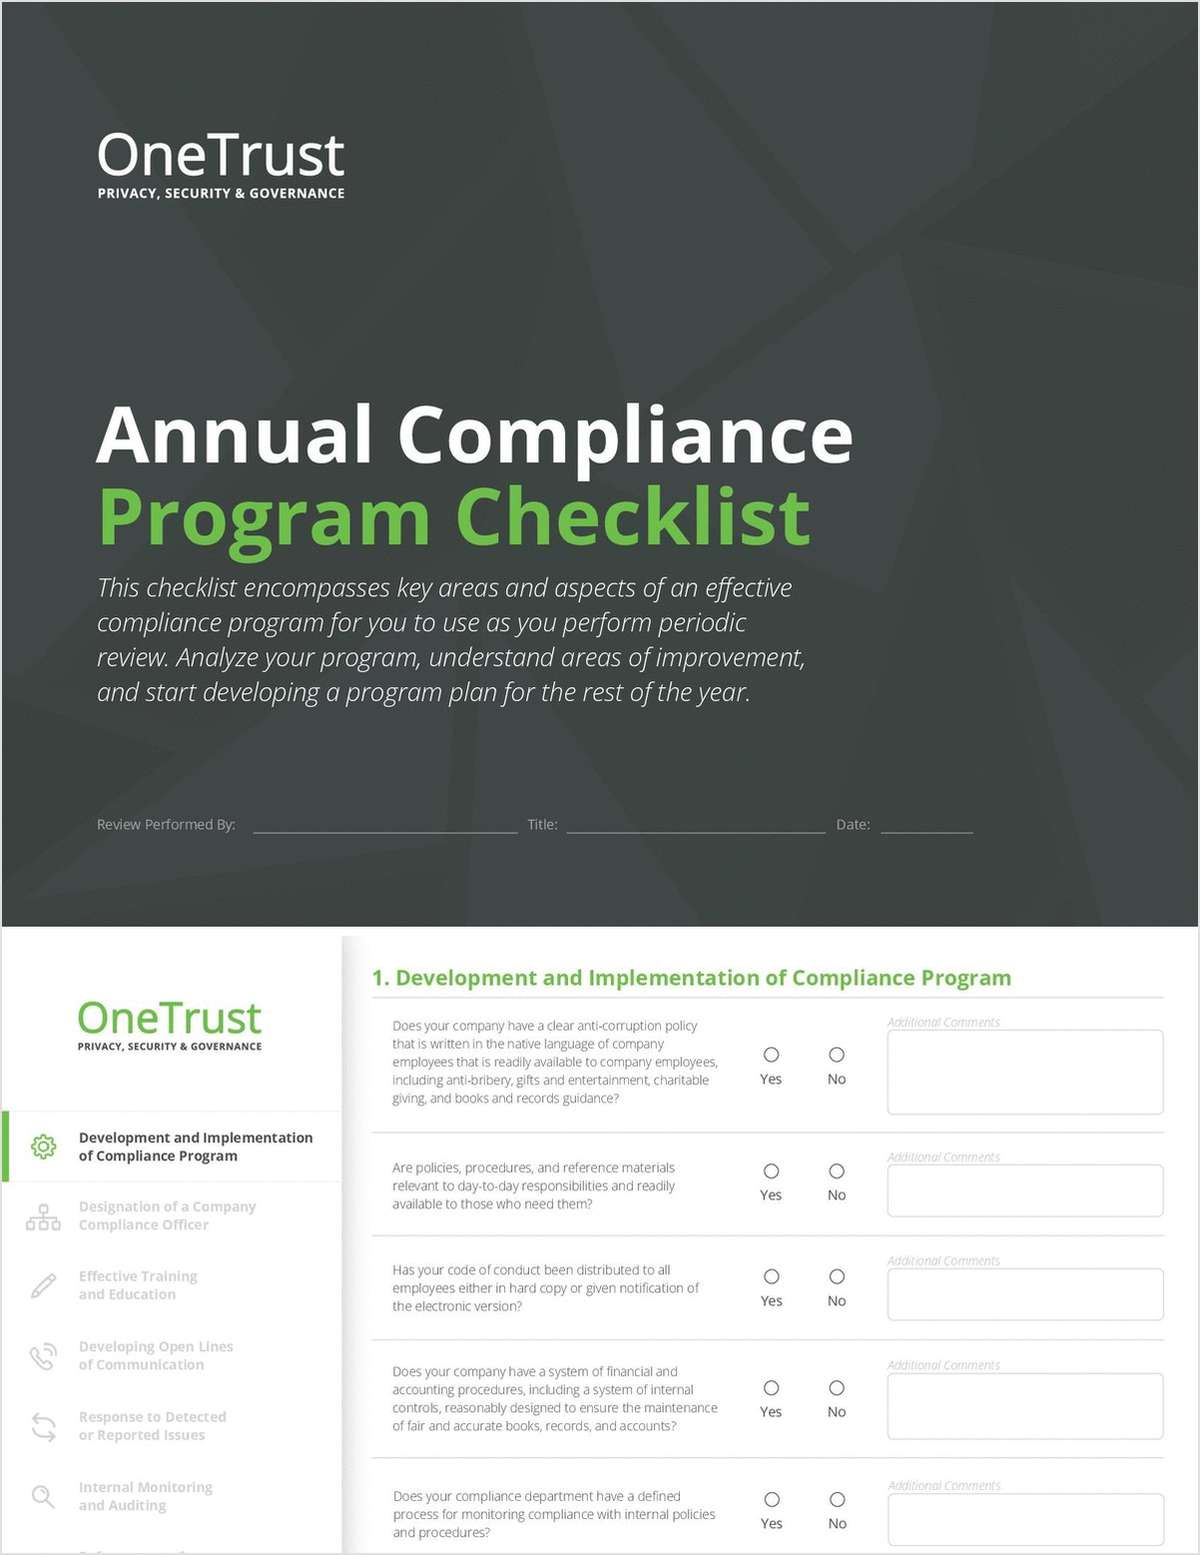 Annual Compliance Program Checklist